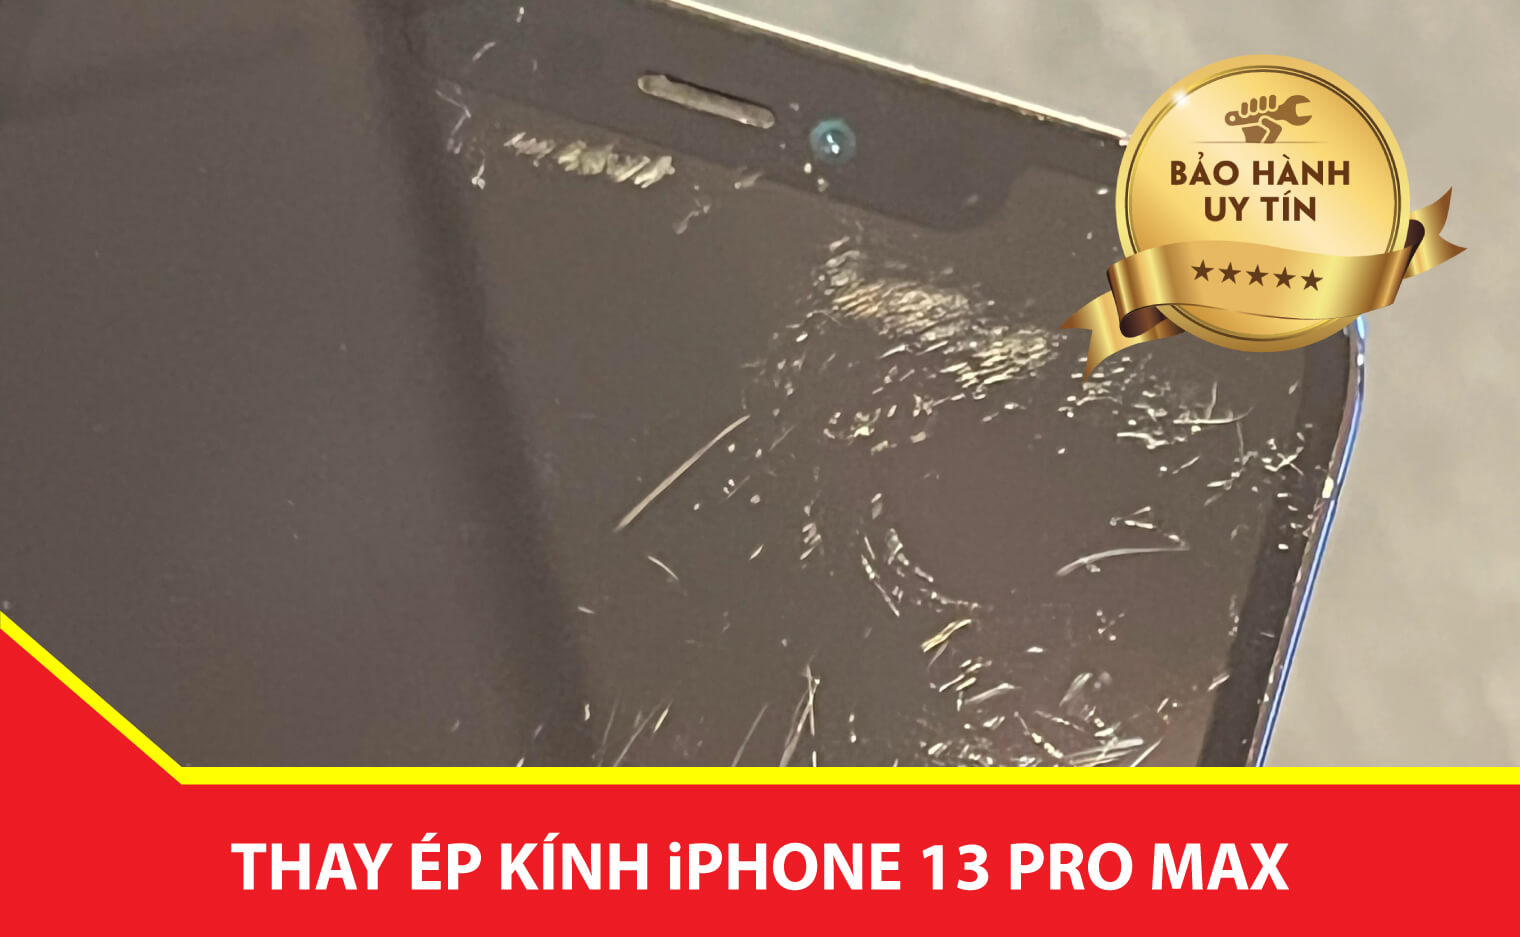 ep kinh iphone 13 pro max Ha Noi